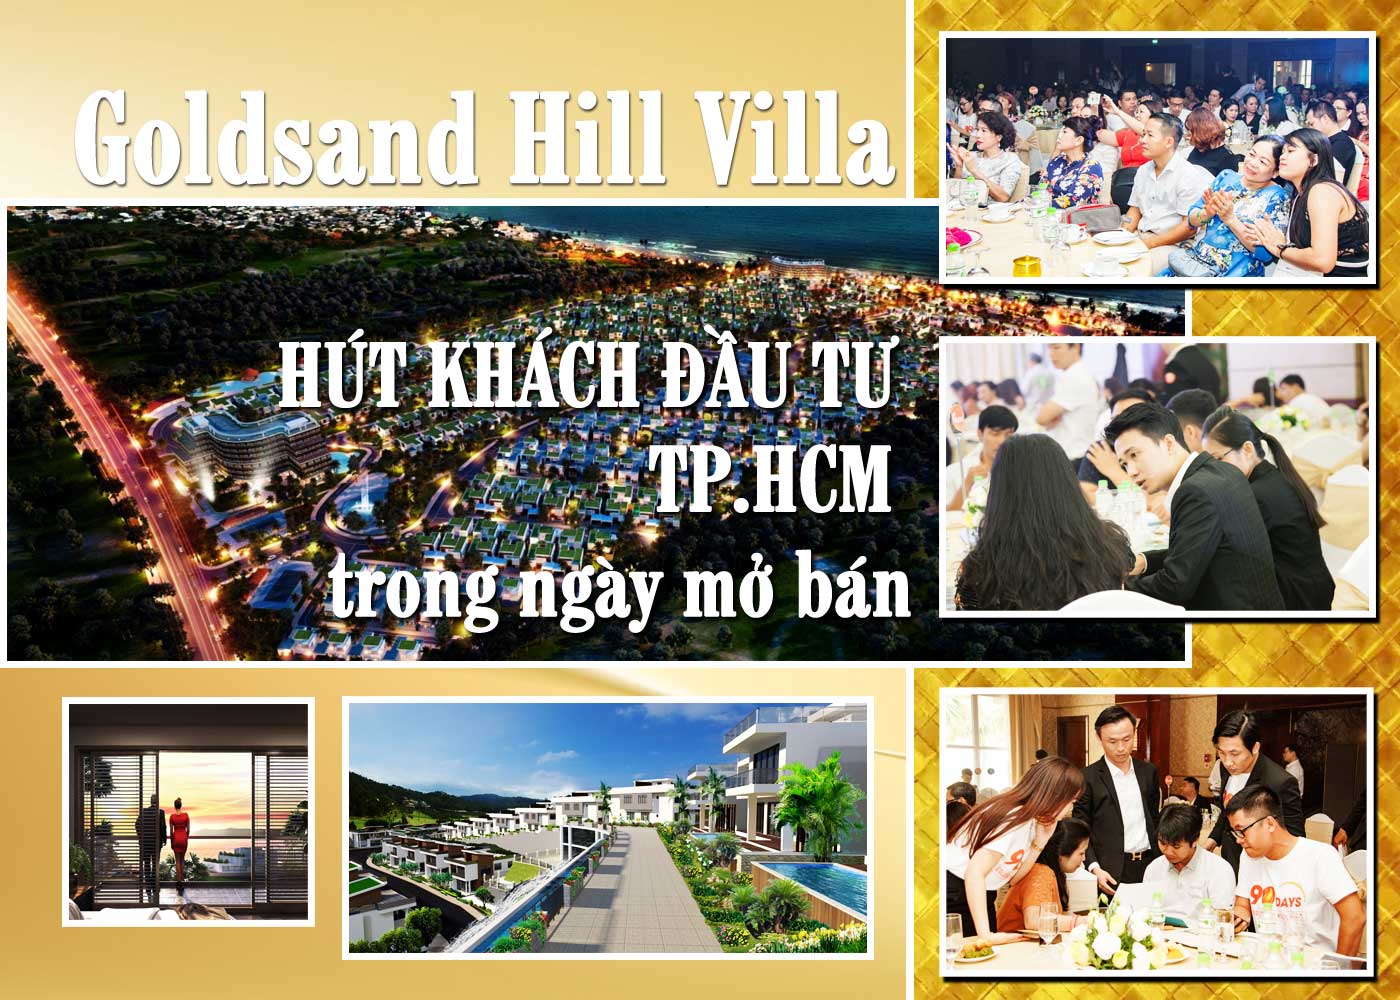 Goldsand Hill Villa hút khách đầu tư TP.HCM trong ngày mở bán - Ảnh 1